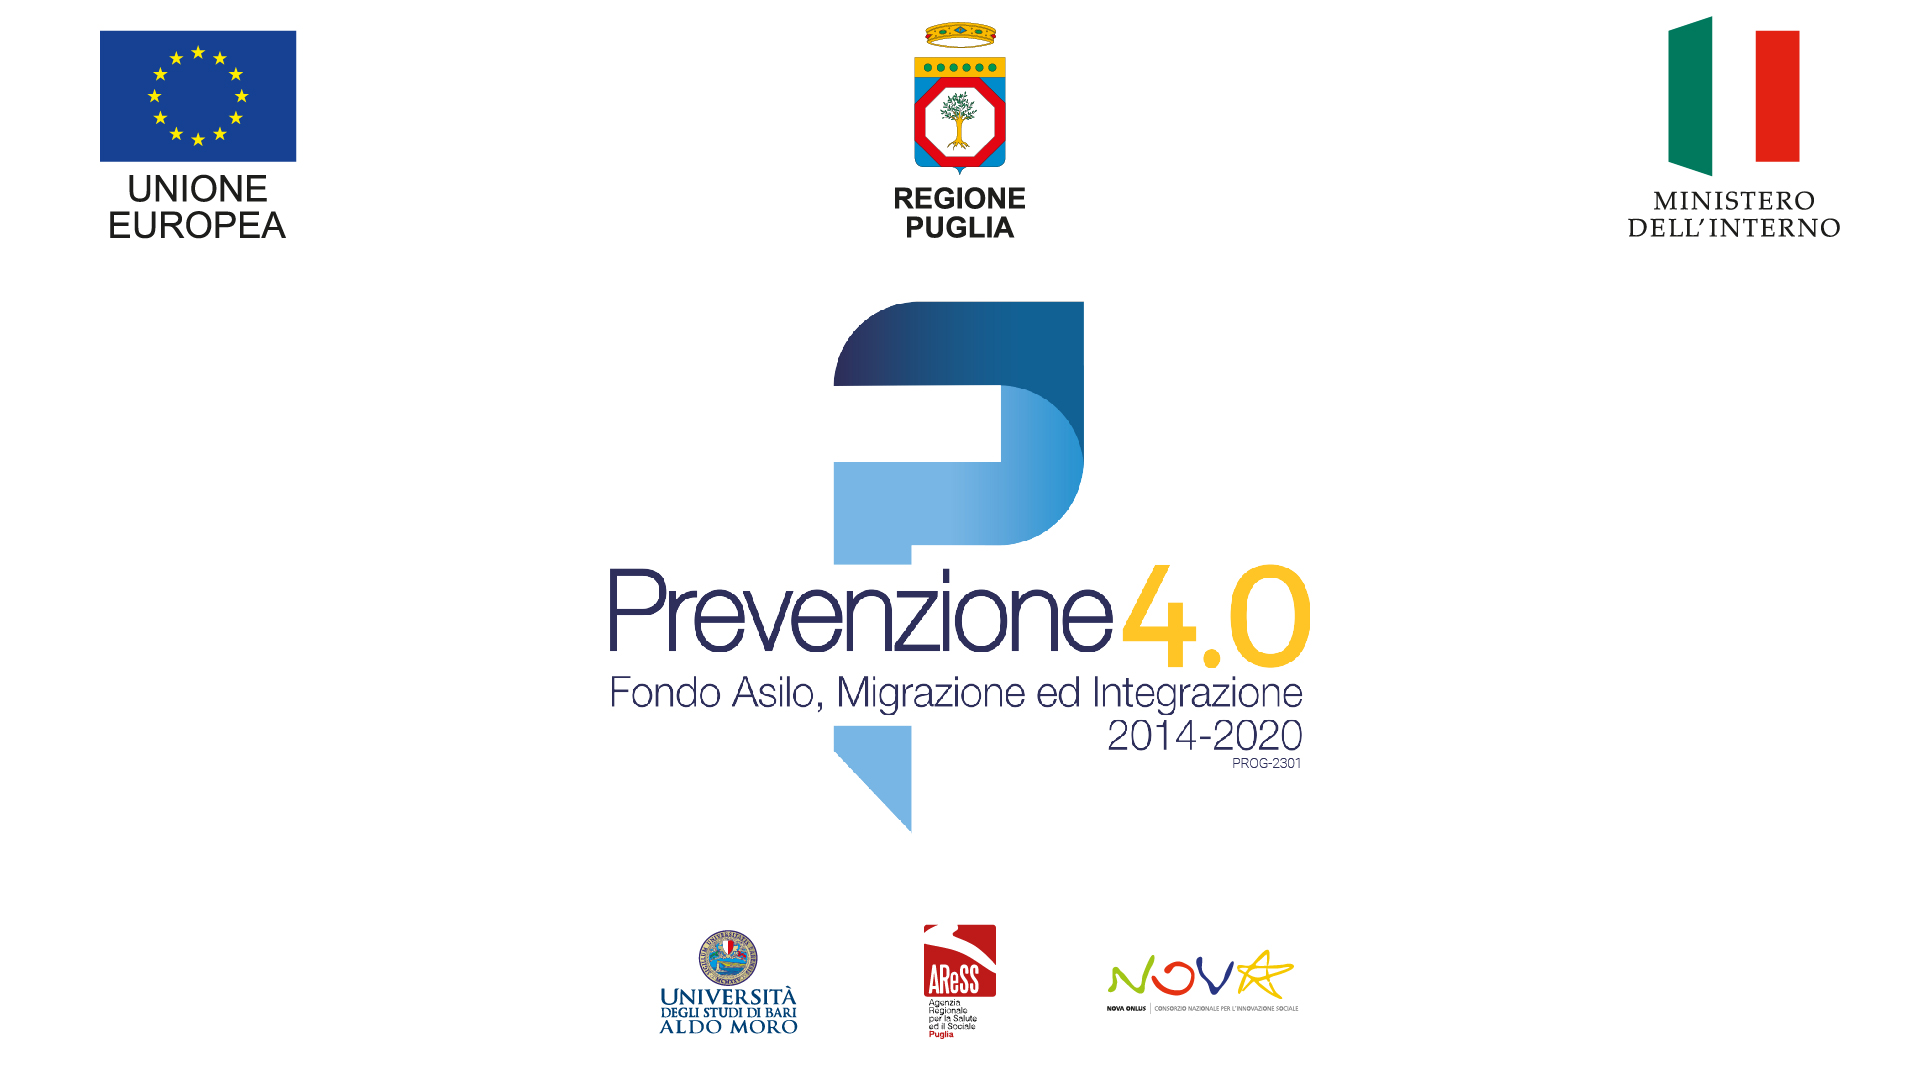 Prevenzione 4.0, mercoledì 27 ottobre in Fiera del Levante l’evento conclusivo